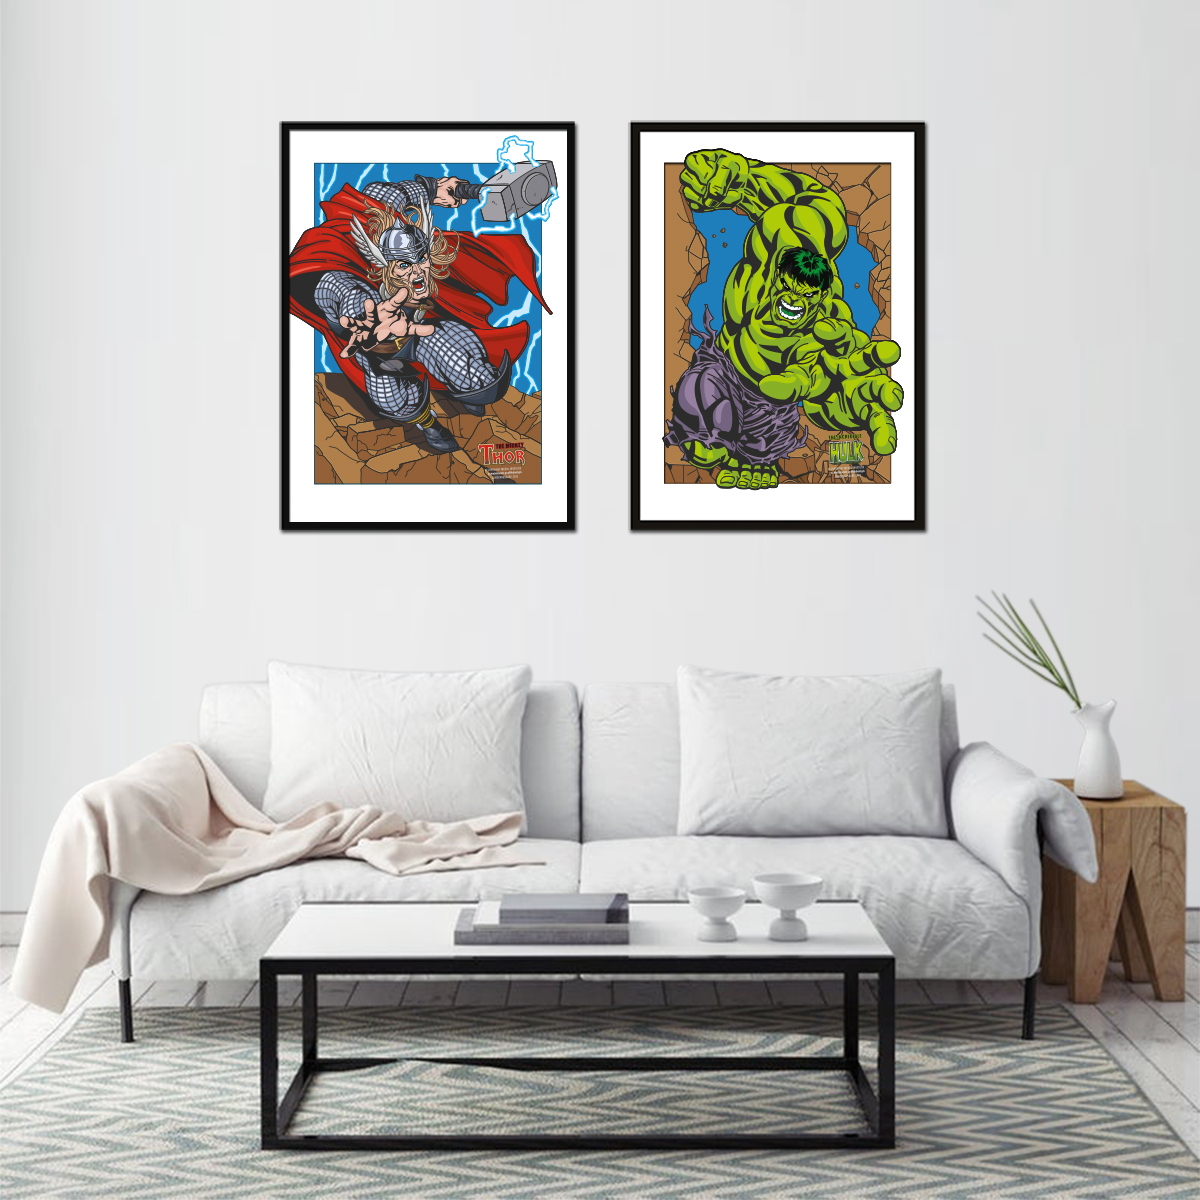 Thor vs Hulk im Rahmen und Raumansicht